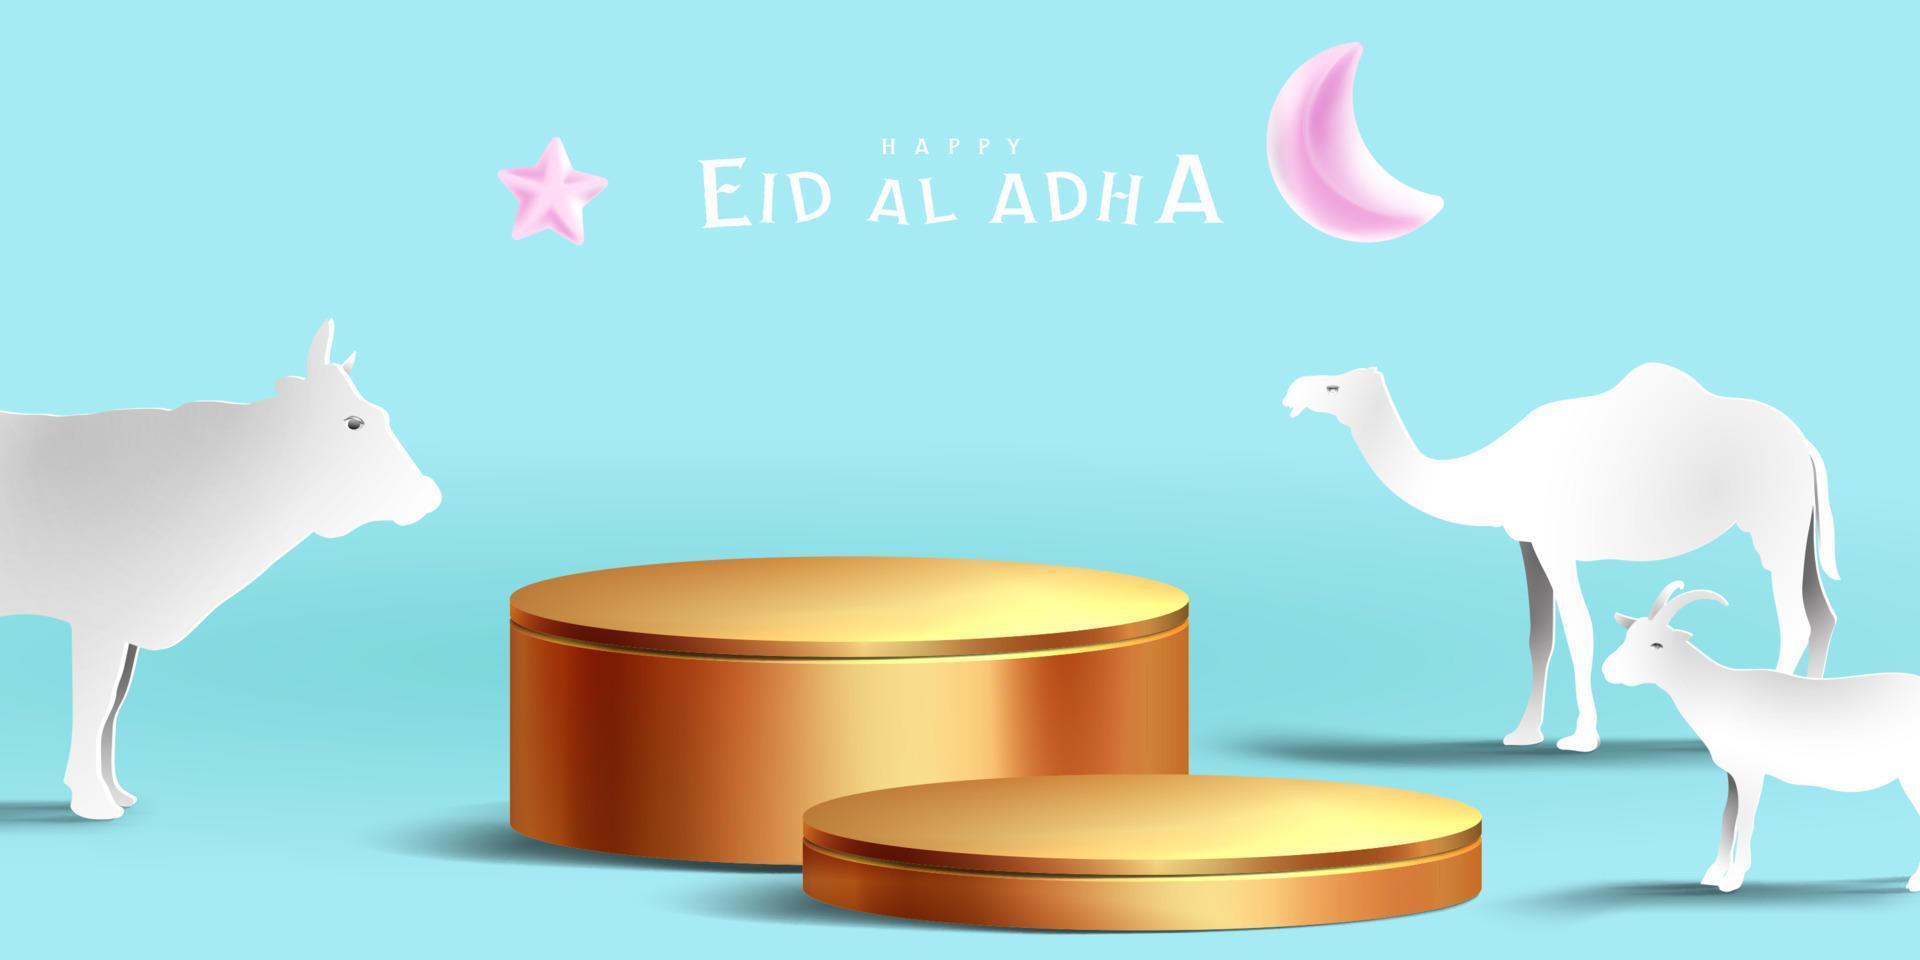 fondo de podio de exhibición de decoración islámica eid al adha con cabra, camello, vaca, luna y estrella. exhibición de productos para ramadan kareem, mawlid, eid al fitr, muharram vector